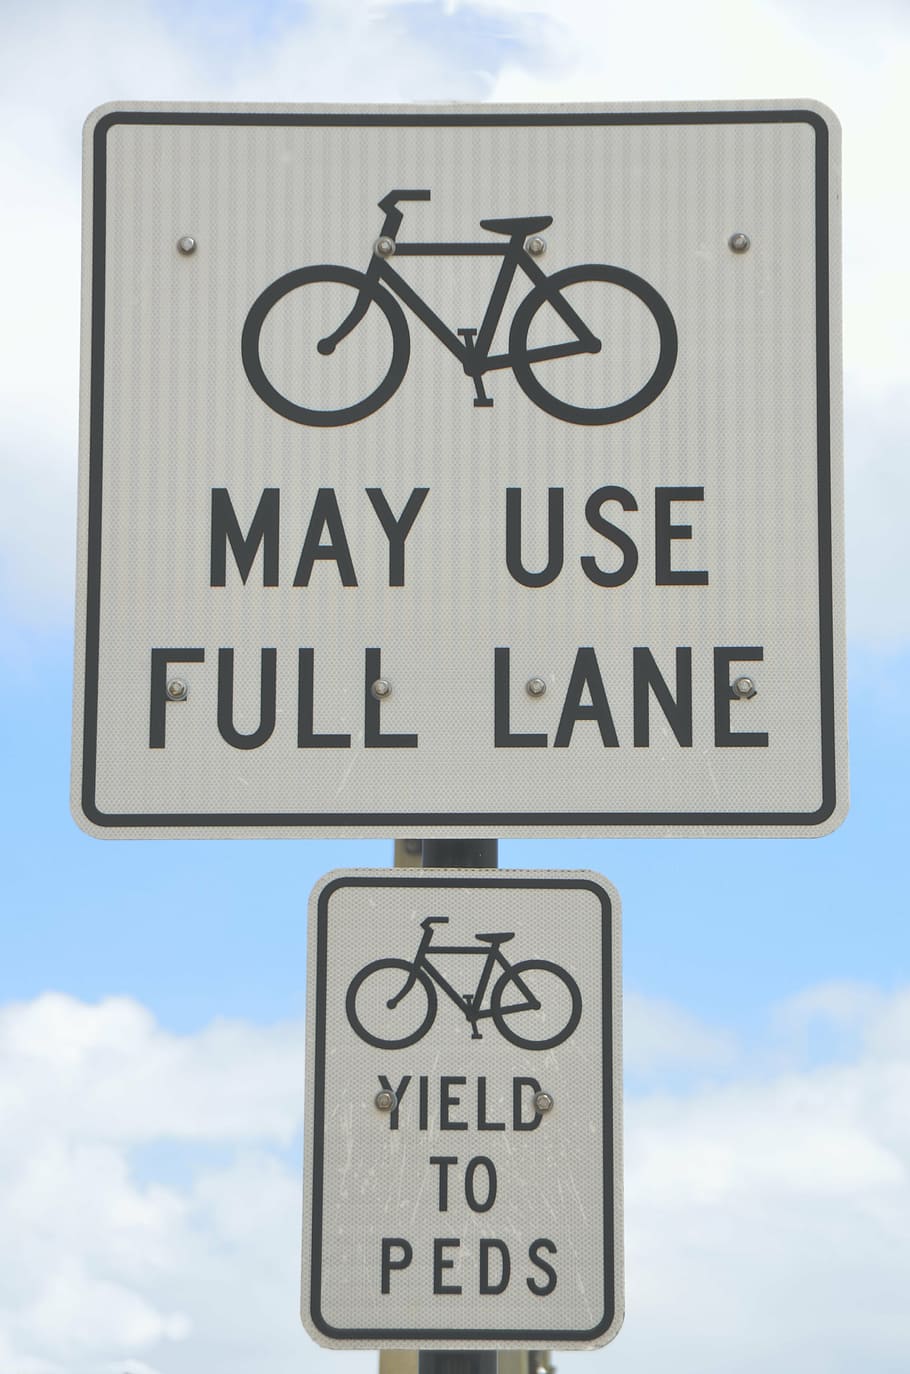 Bikes may use full lane signage